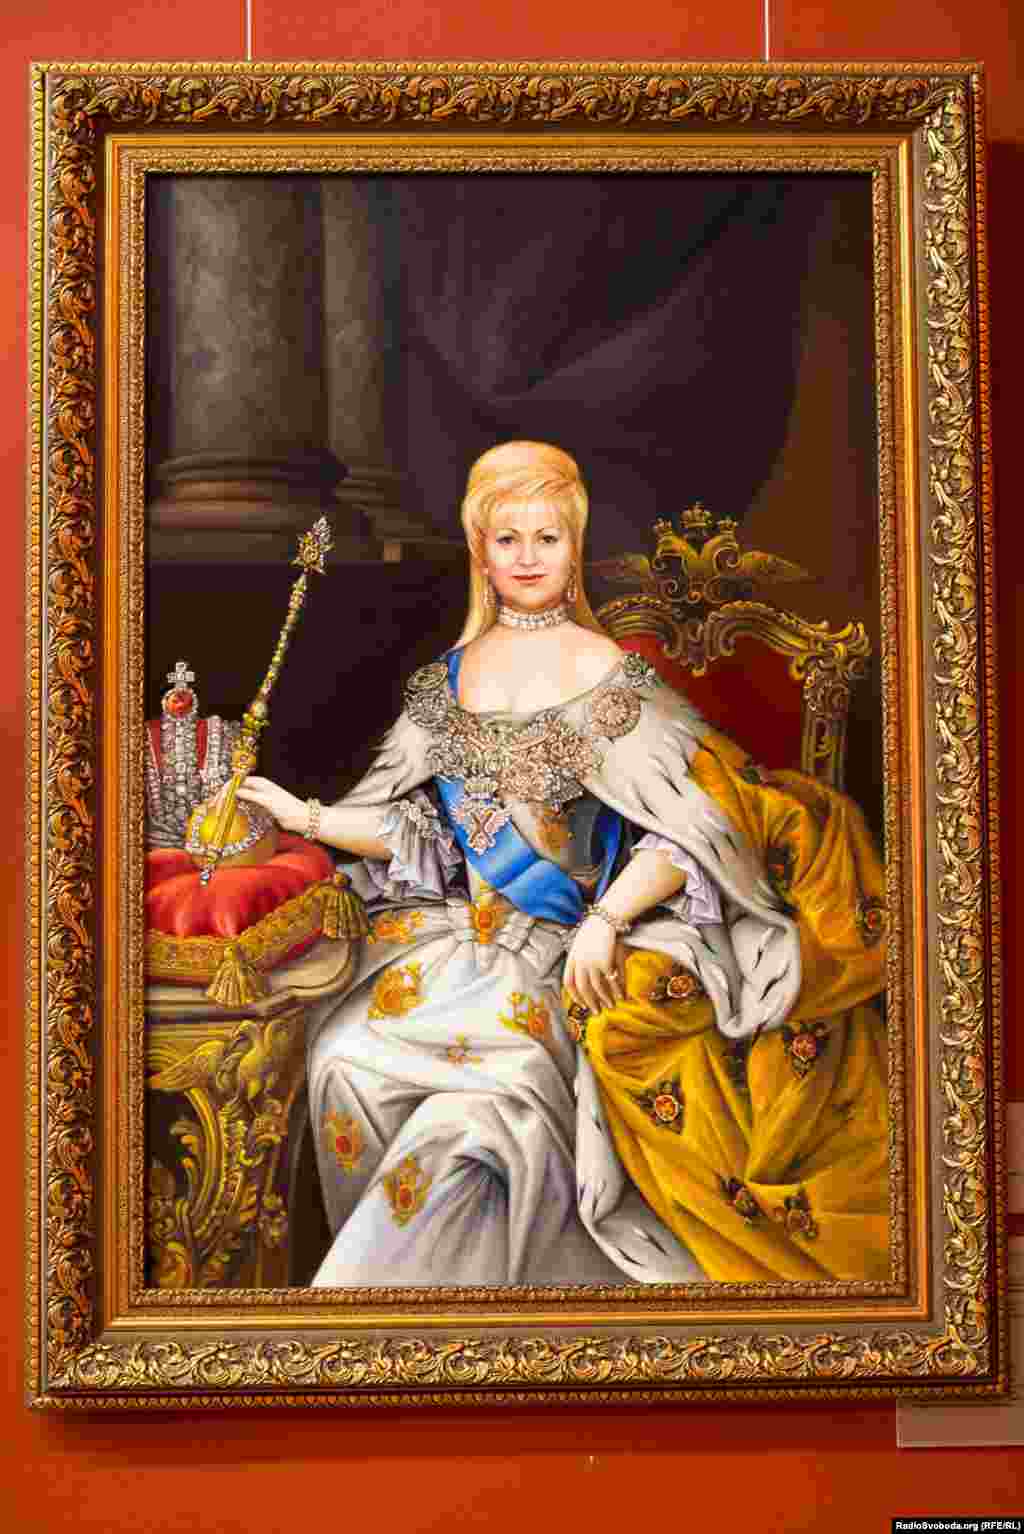 در این تصویر، &laquo;لیوبوف پولژی&raquo;، معشوقه یانوکوویچ به شکل یک ملکه نقاشی شده است